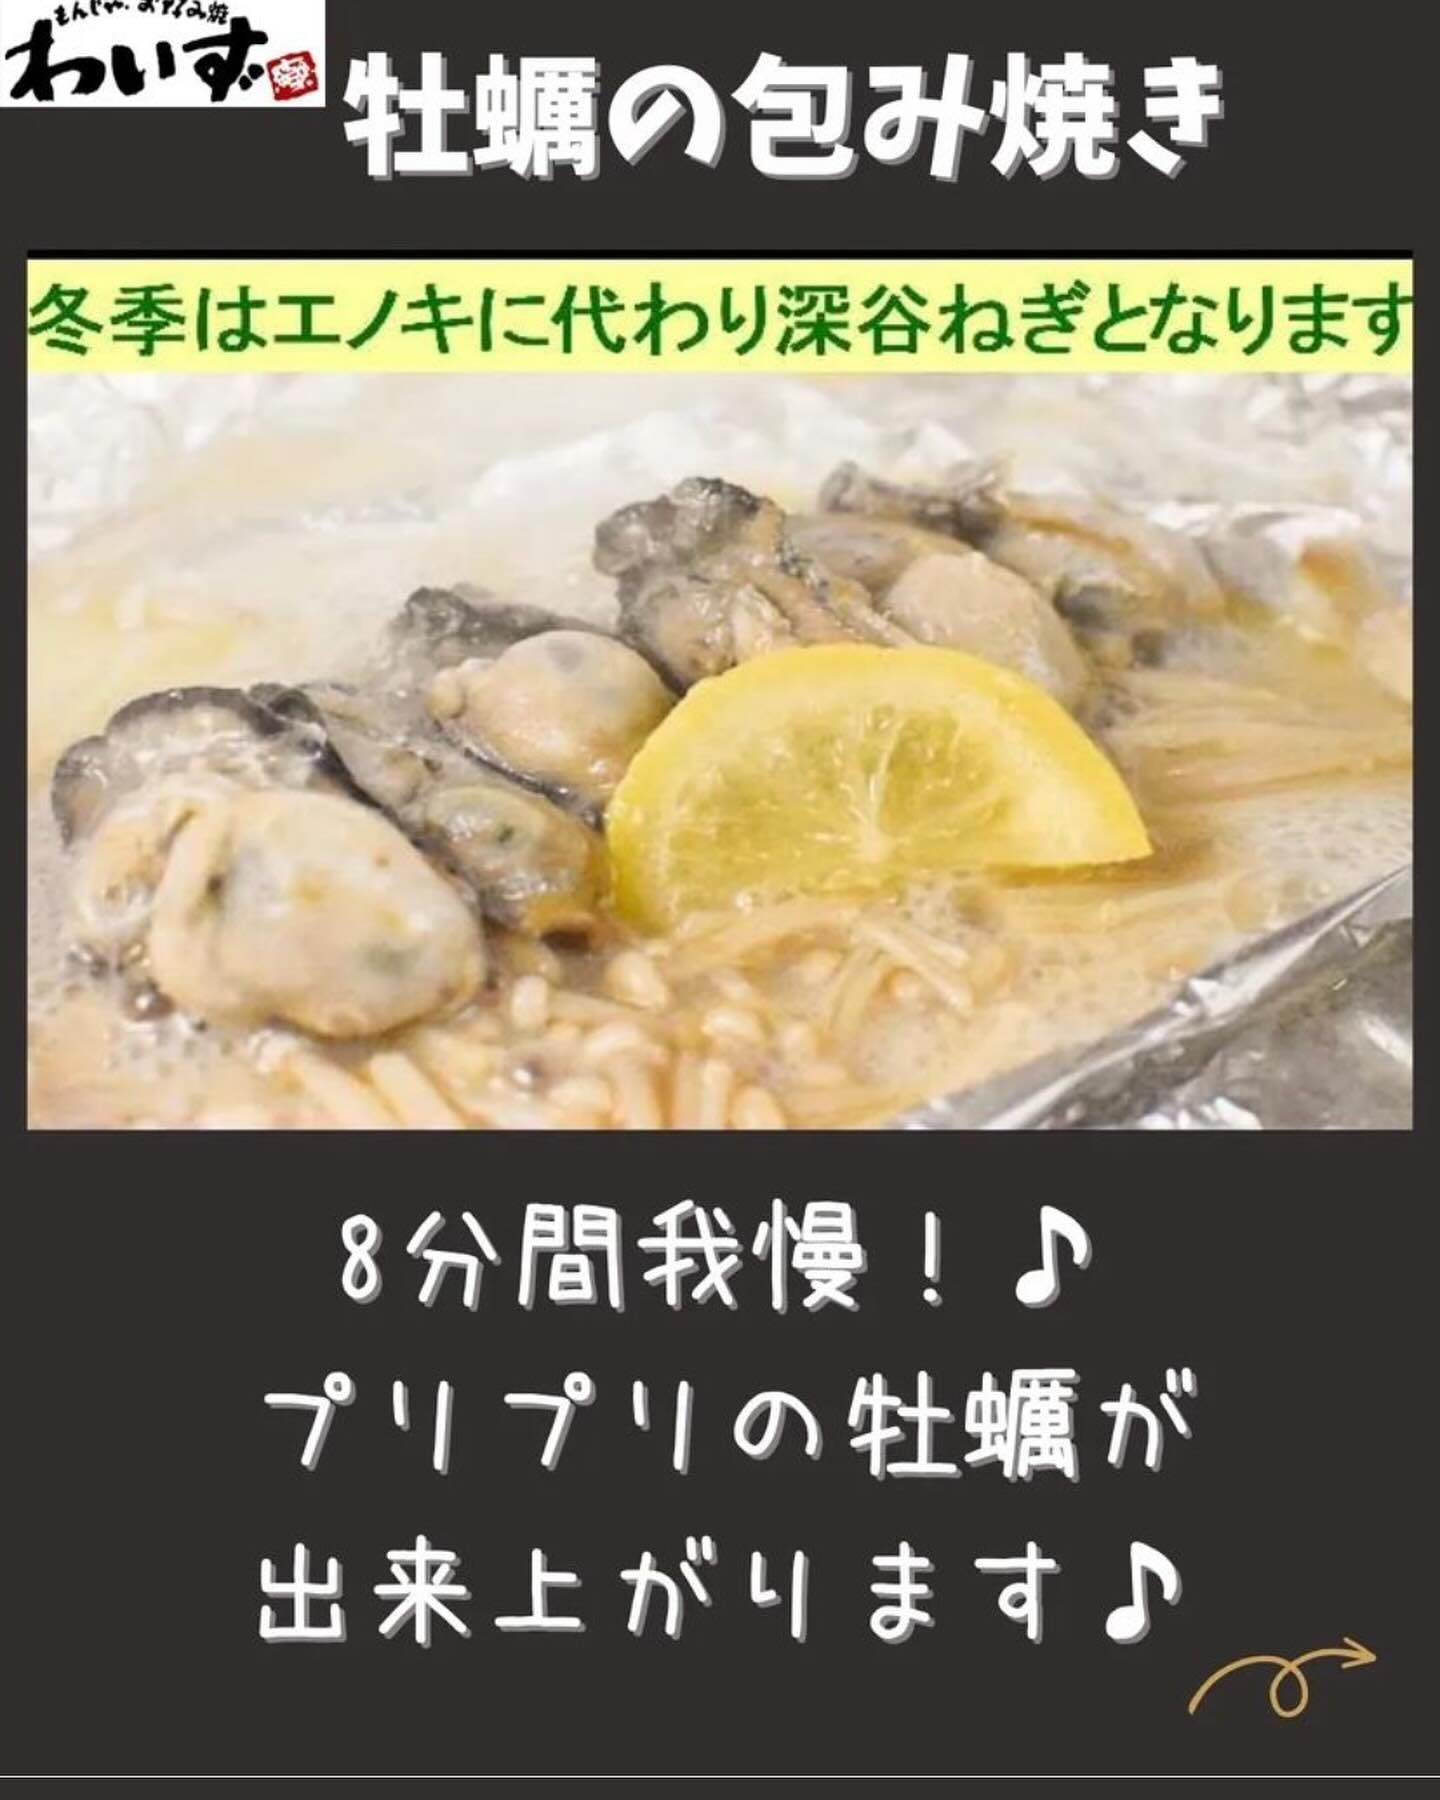 ◆牡蠣の包み焼◆もんじゃ・お好み焼きわいず